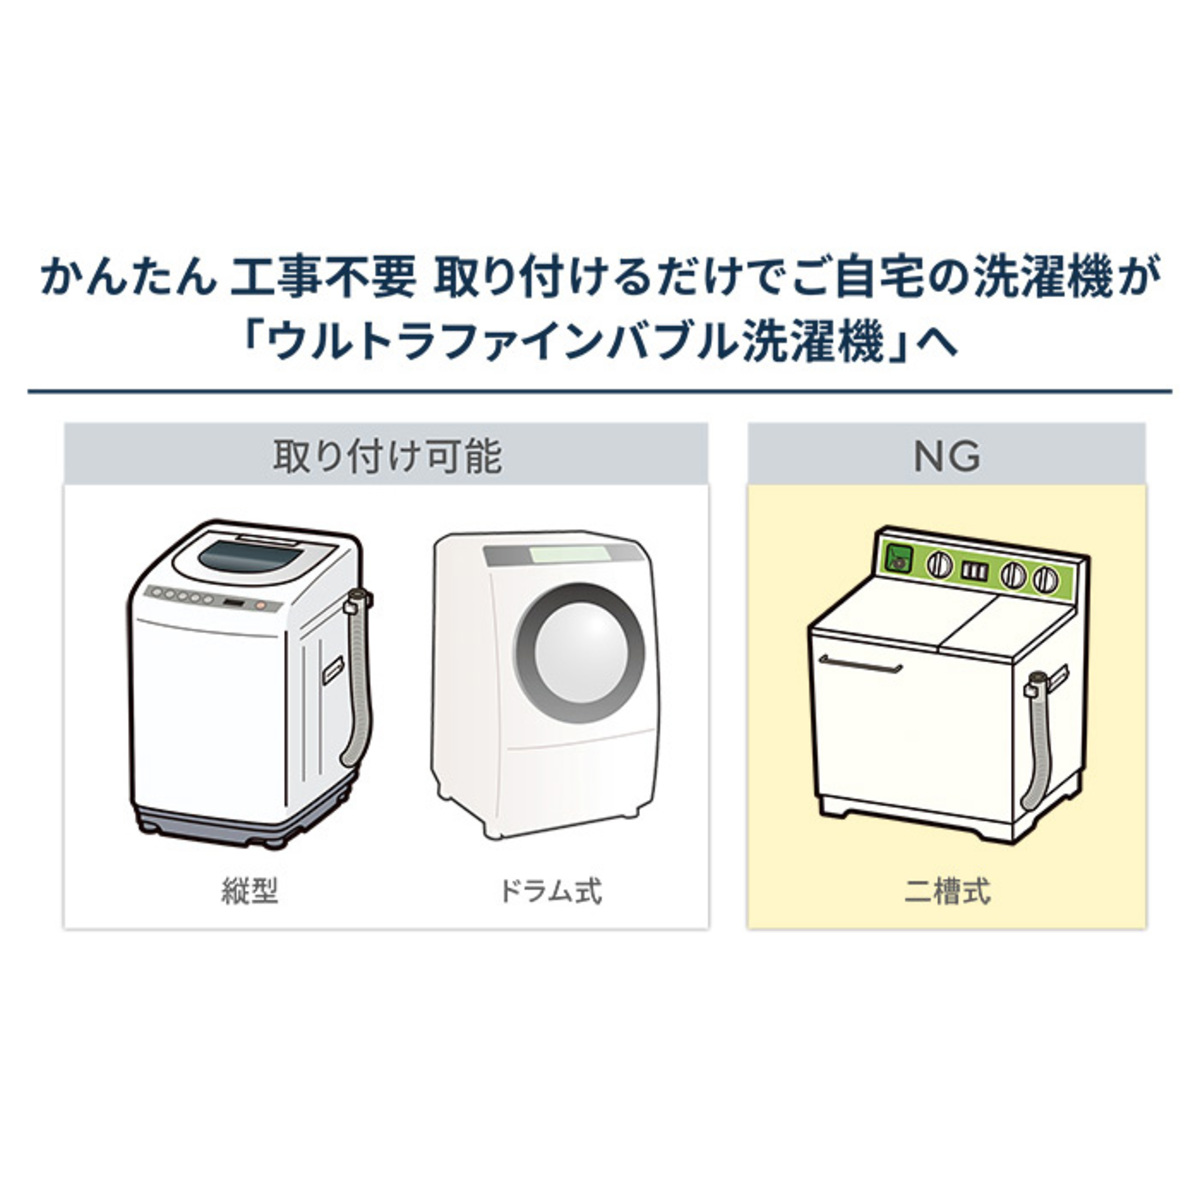 洗濯機用 ウルトラファインバブル発生アダプター 富士計器 - QVC.jp